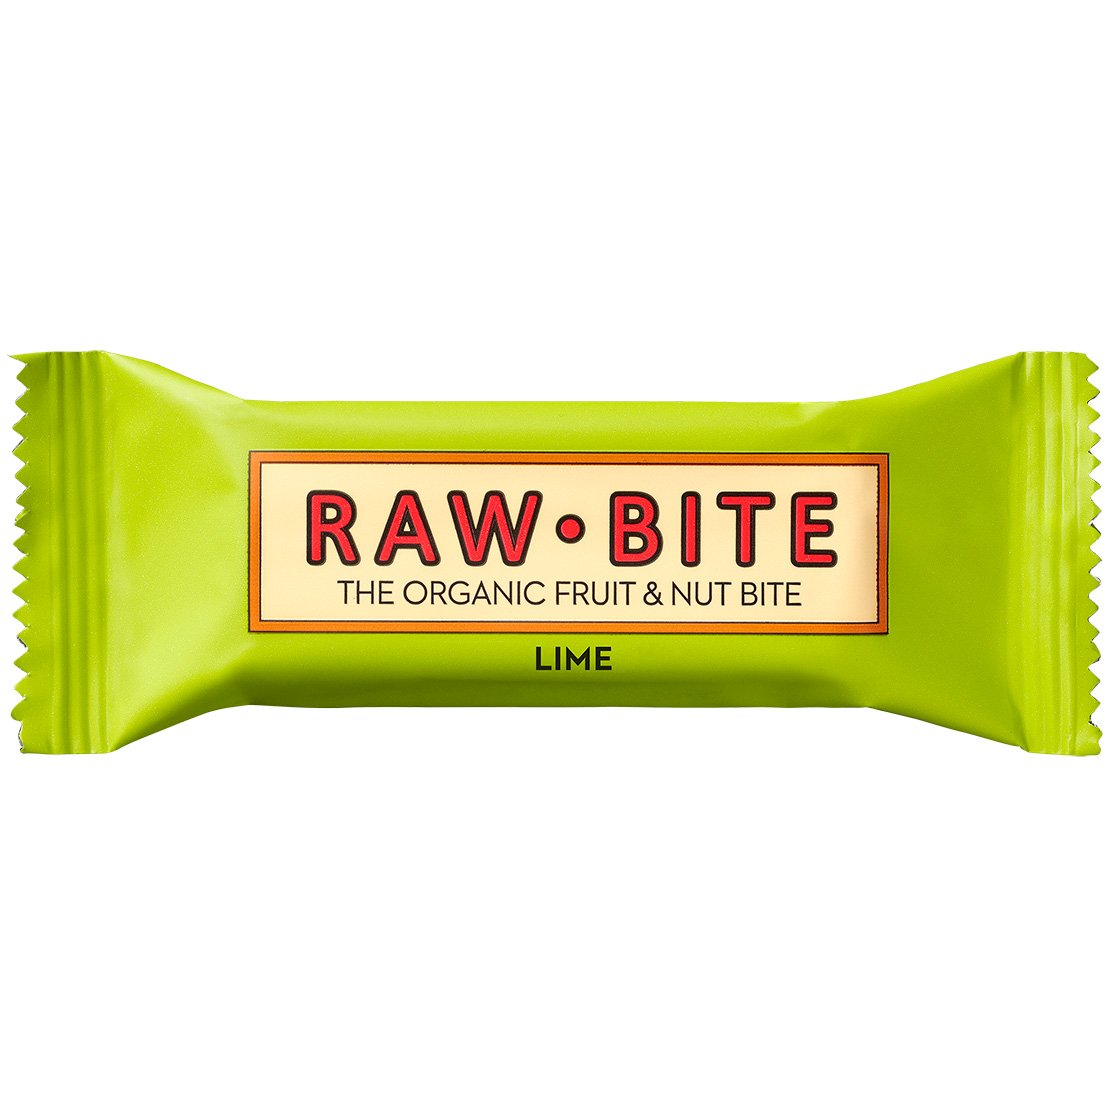 Rawbite raw barer